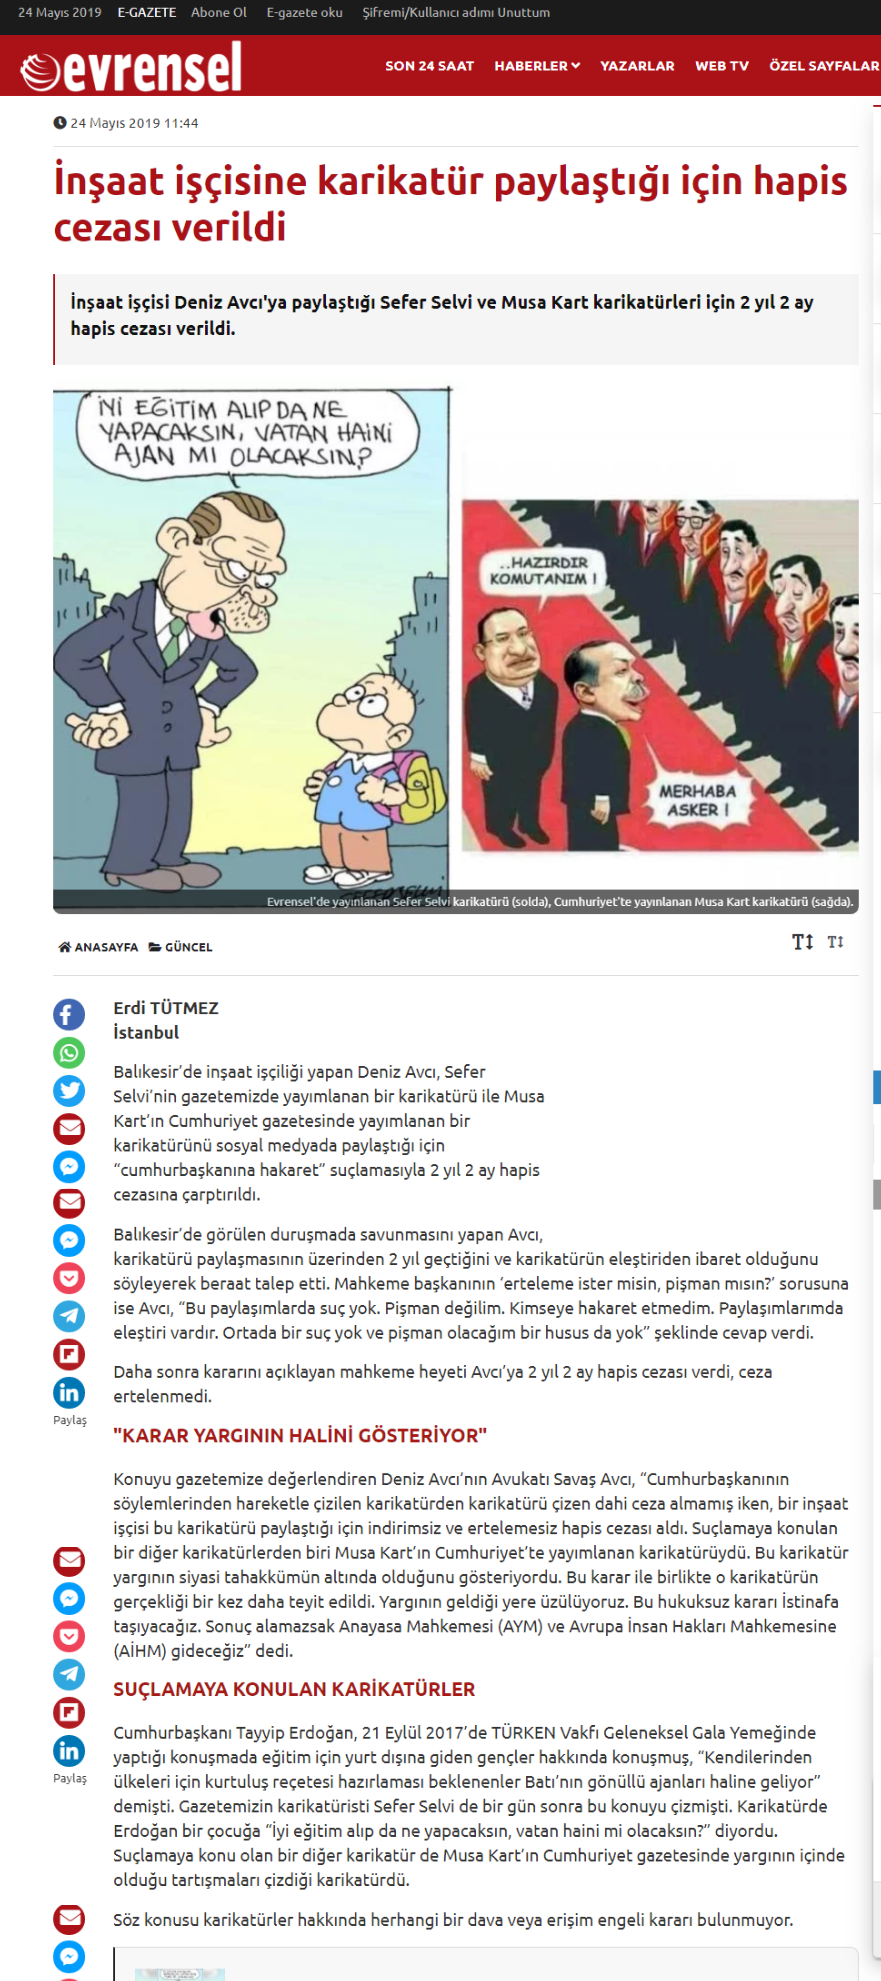 Recep Tayyip Erdoğan karikatürü paylaşan inşaat işçisine hapis cezası şoku!